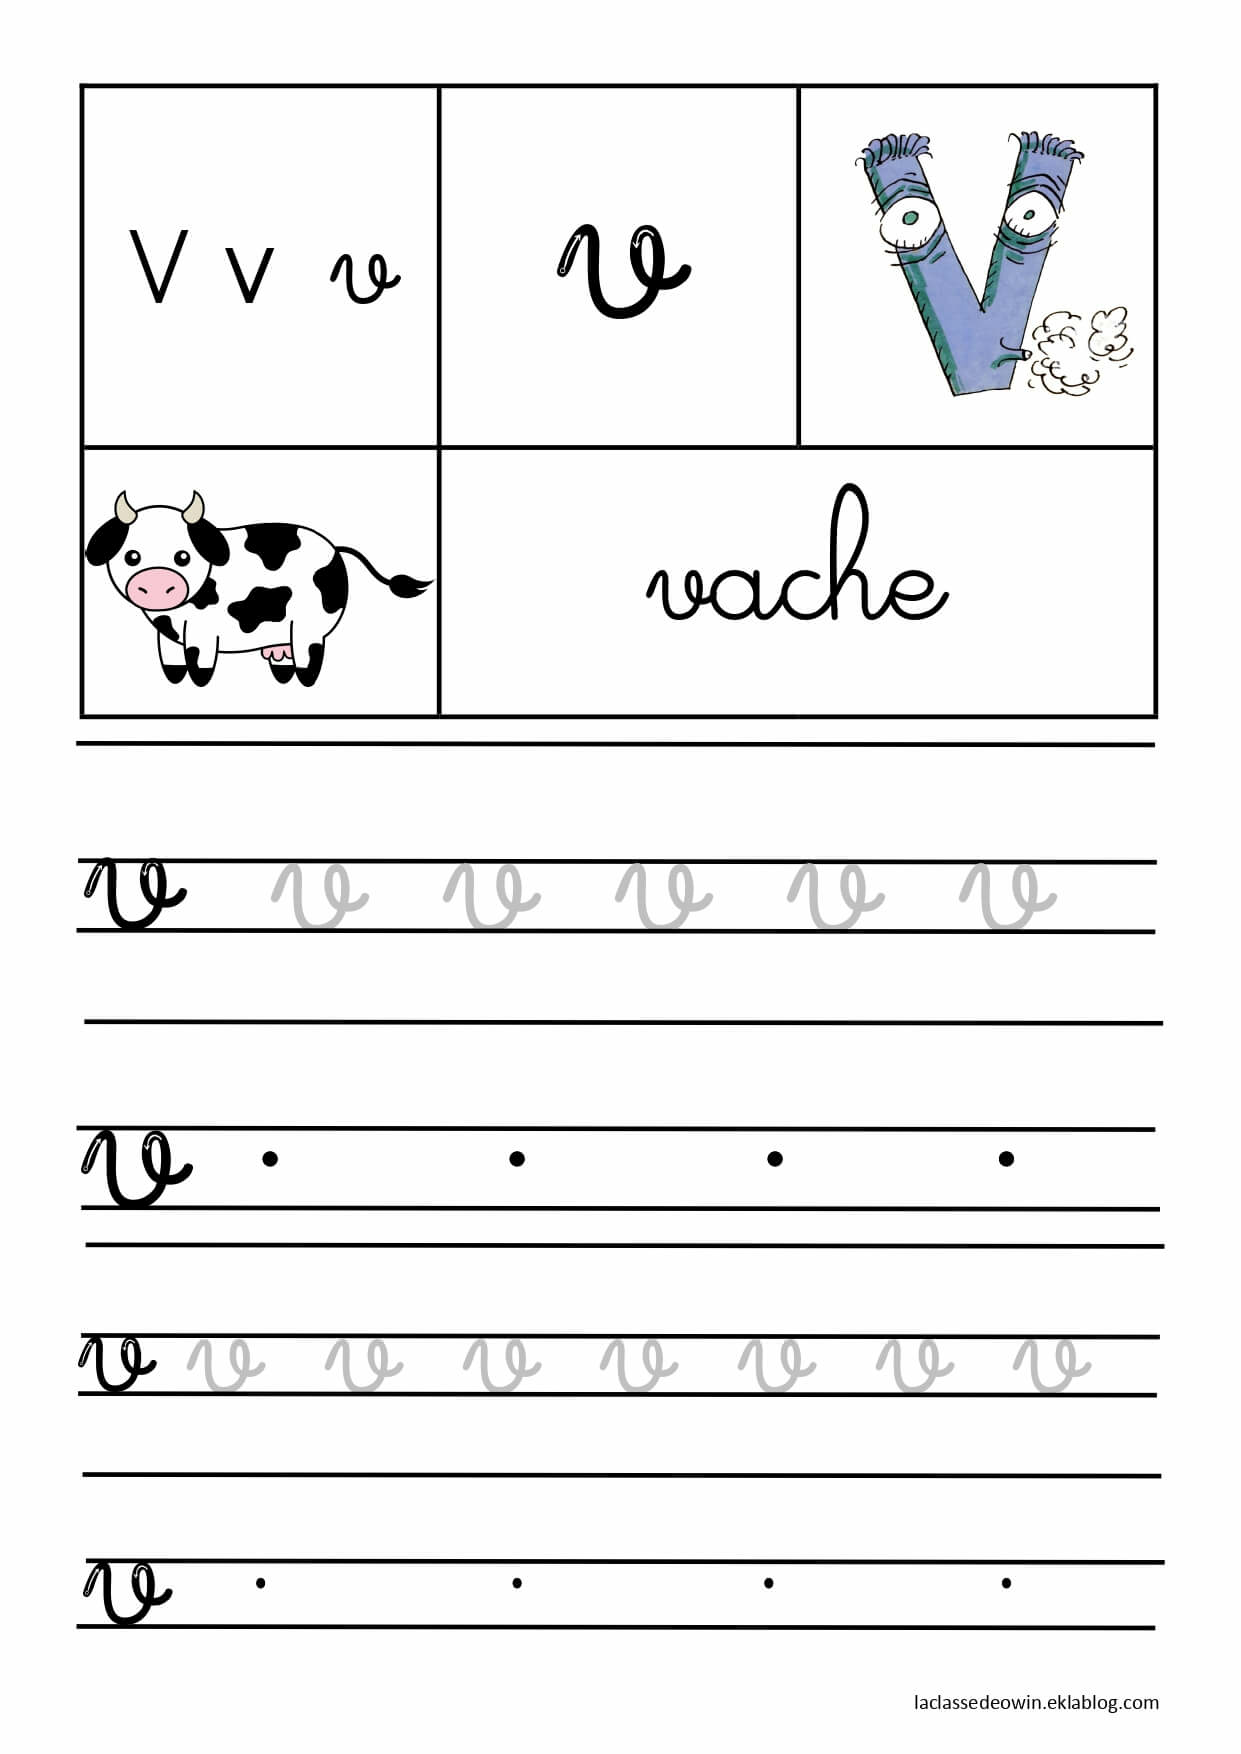   Lettre V pour vache, écriture cursive GS 